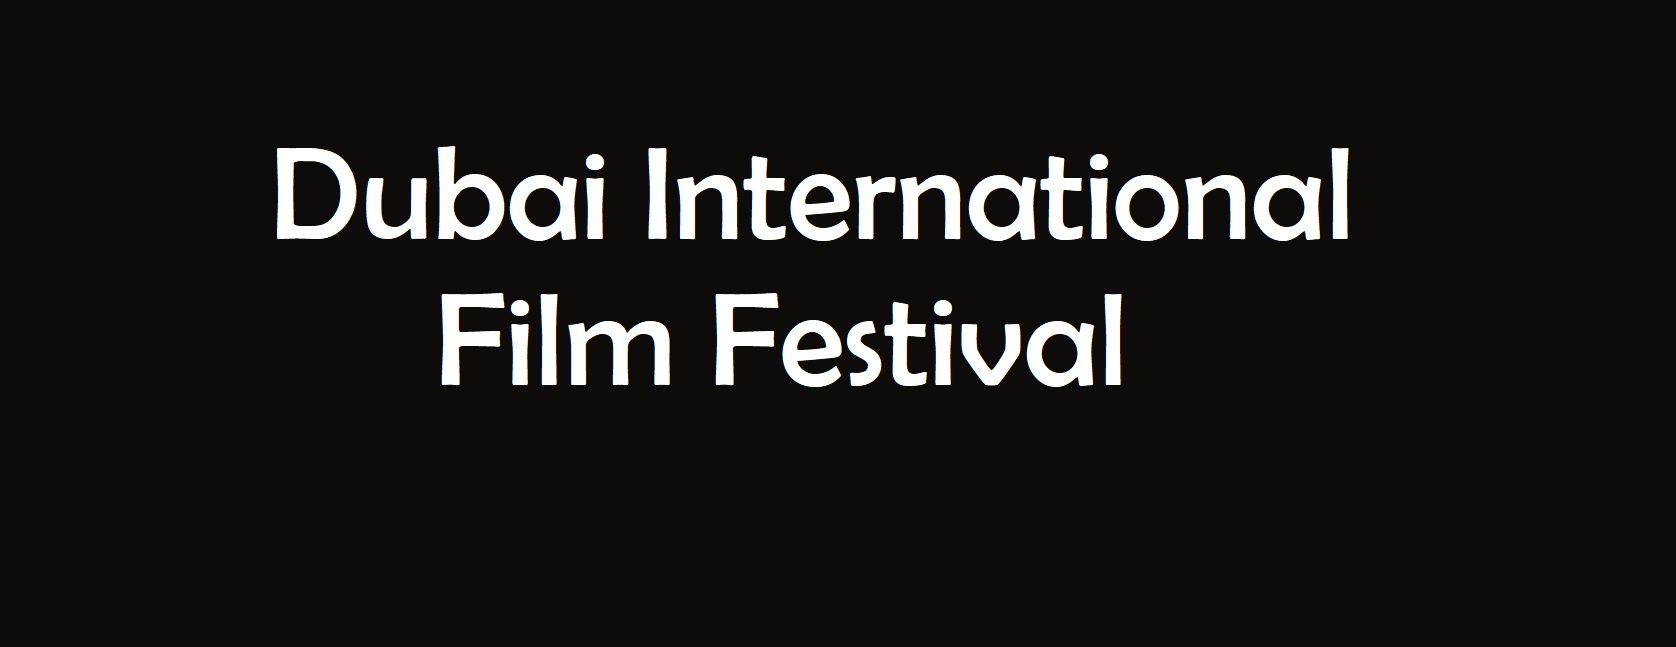 Dubai International Film Festival Tour